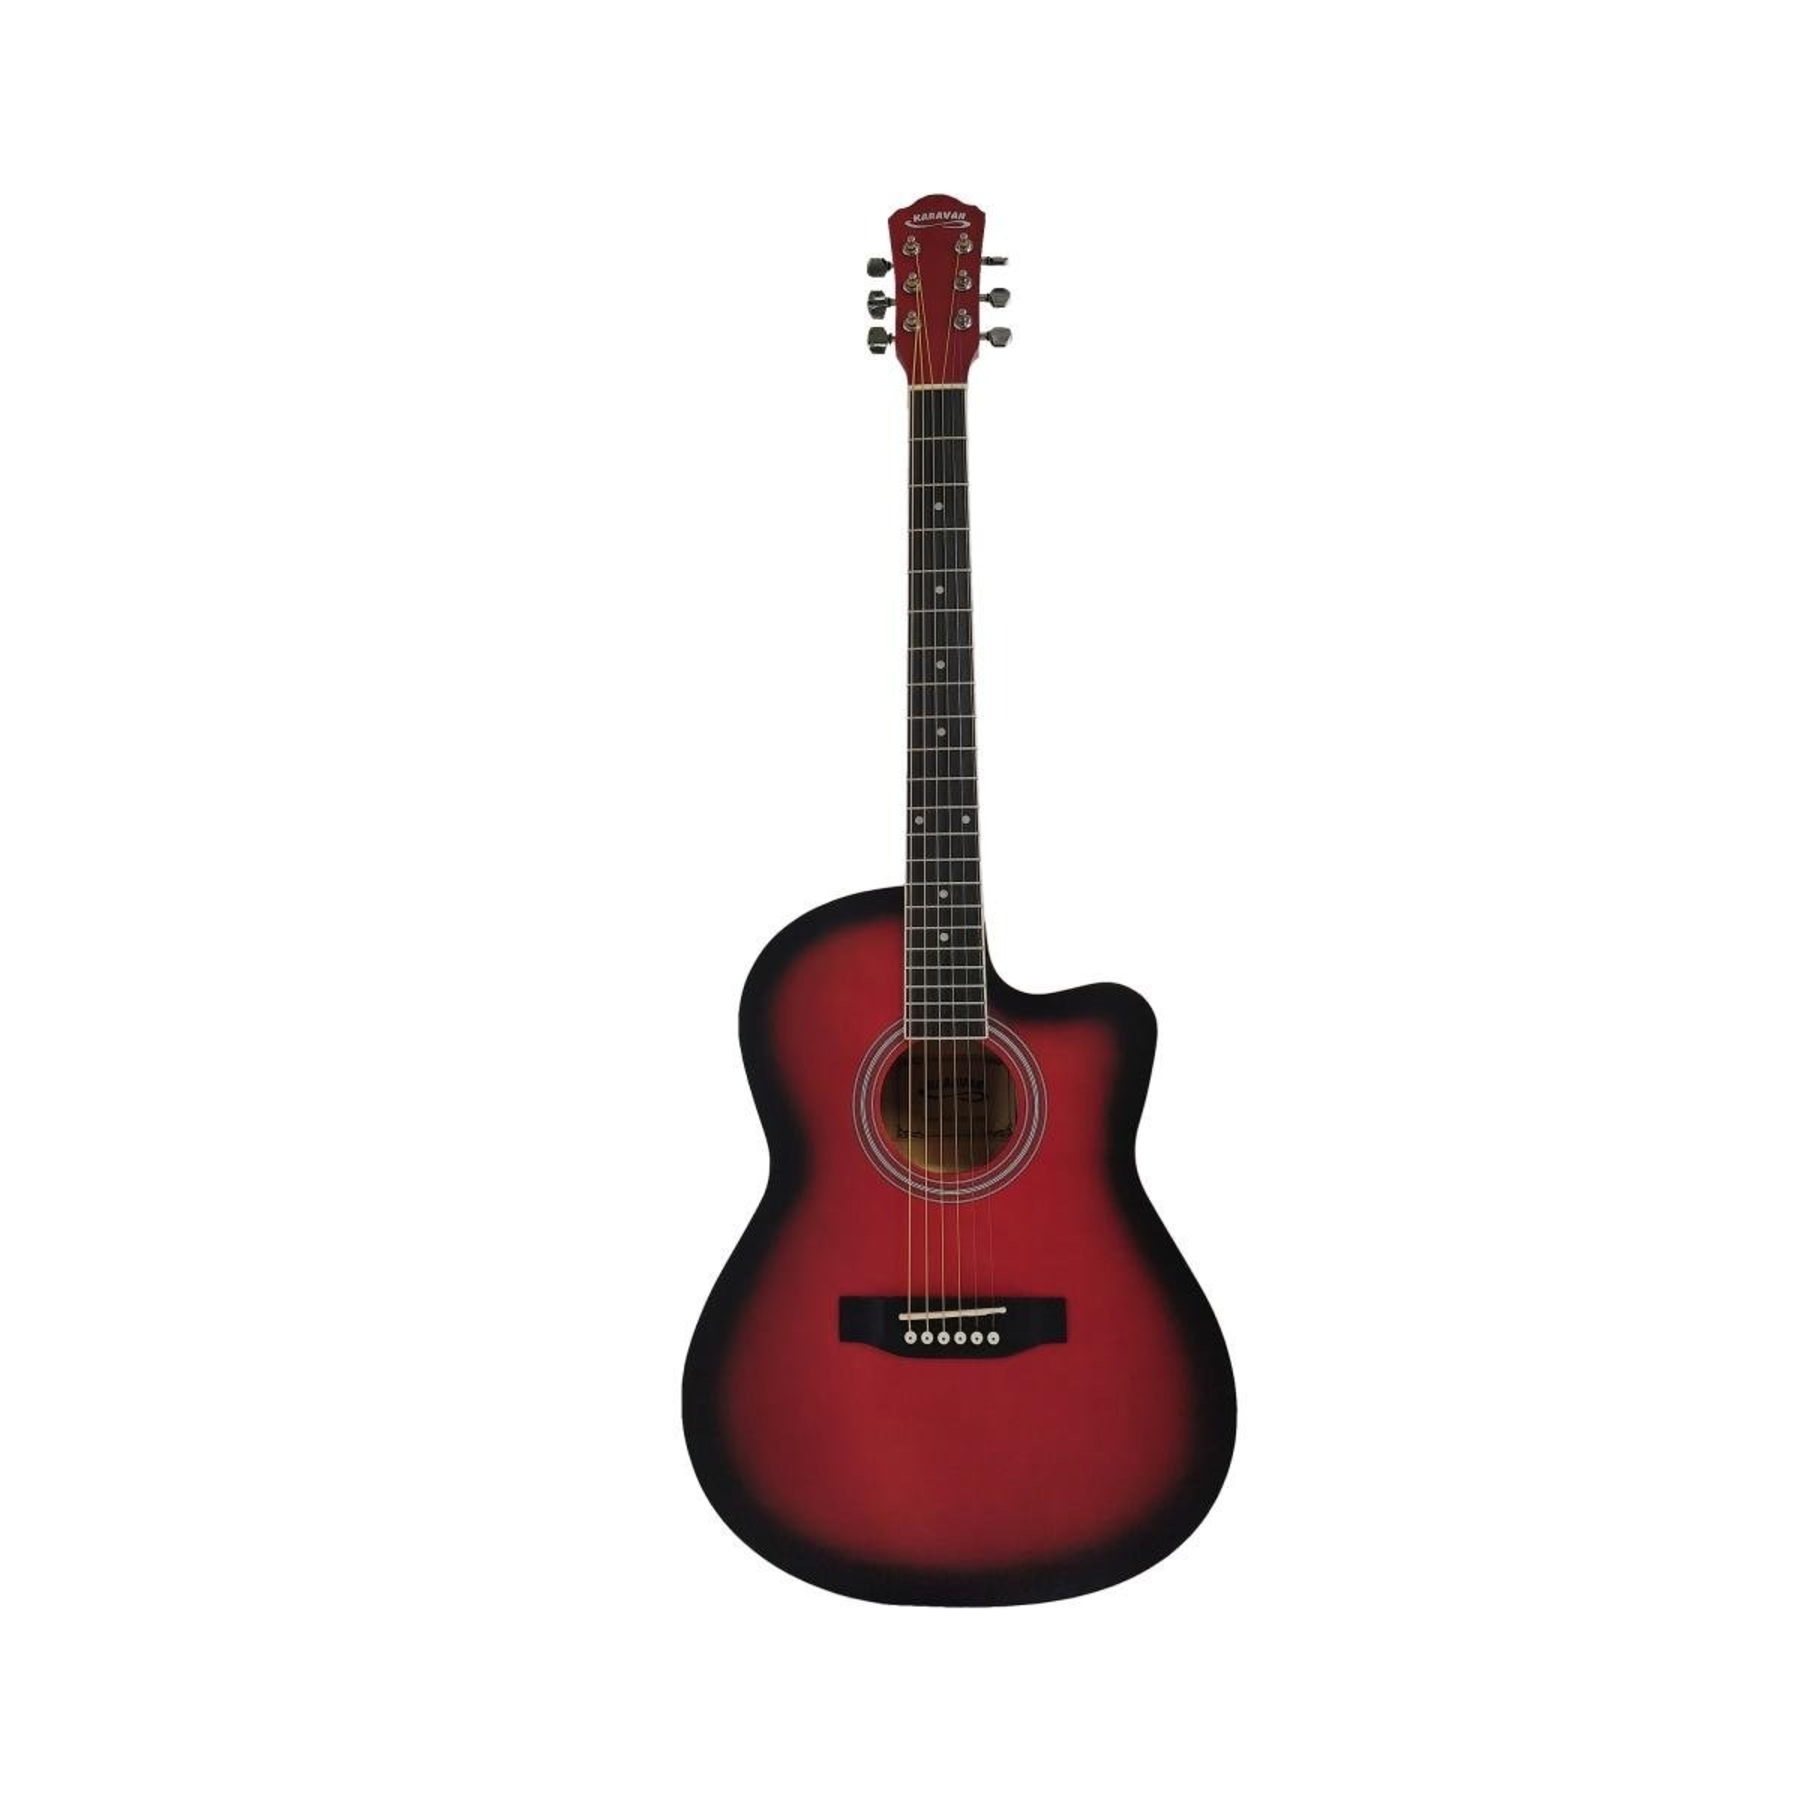 Акустические гитары Caravan K-3911 RD акустическая гитара с вырезом 95 см